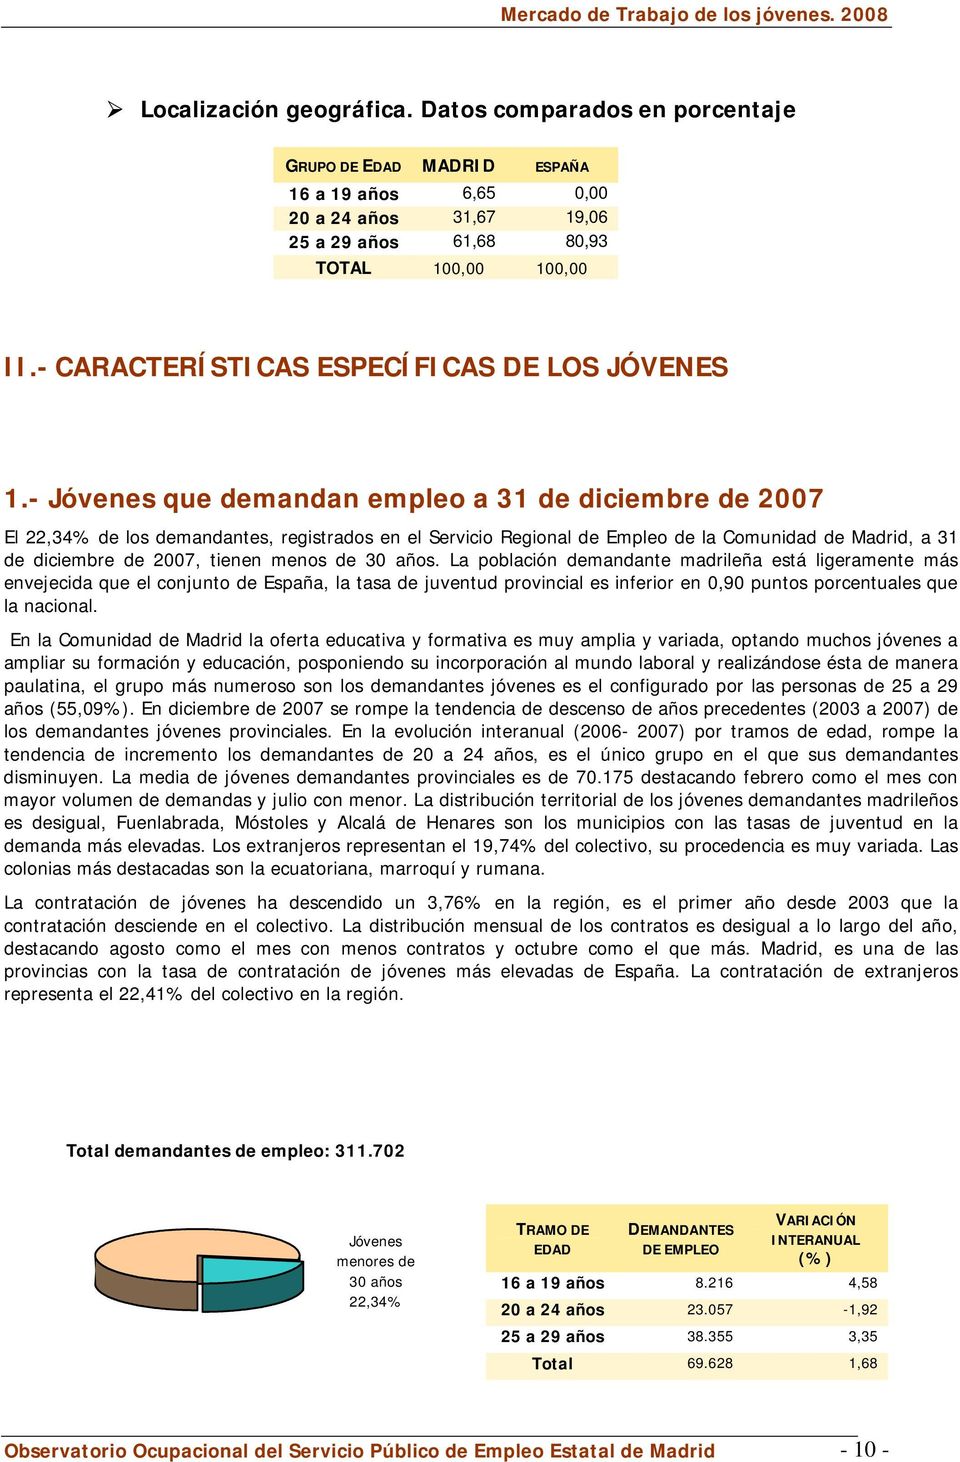 - Jóvenes que demandan empleo a 31 de diciembre de 2007 El 22,34% de los demandantes, registrados en el Servicio Regional de Empleo de la Comunidad de Madrid, a 31 de diciembre de 2007, tienen menos